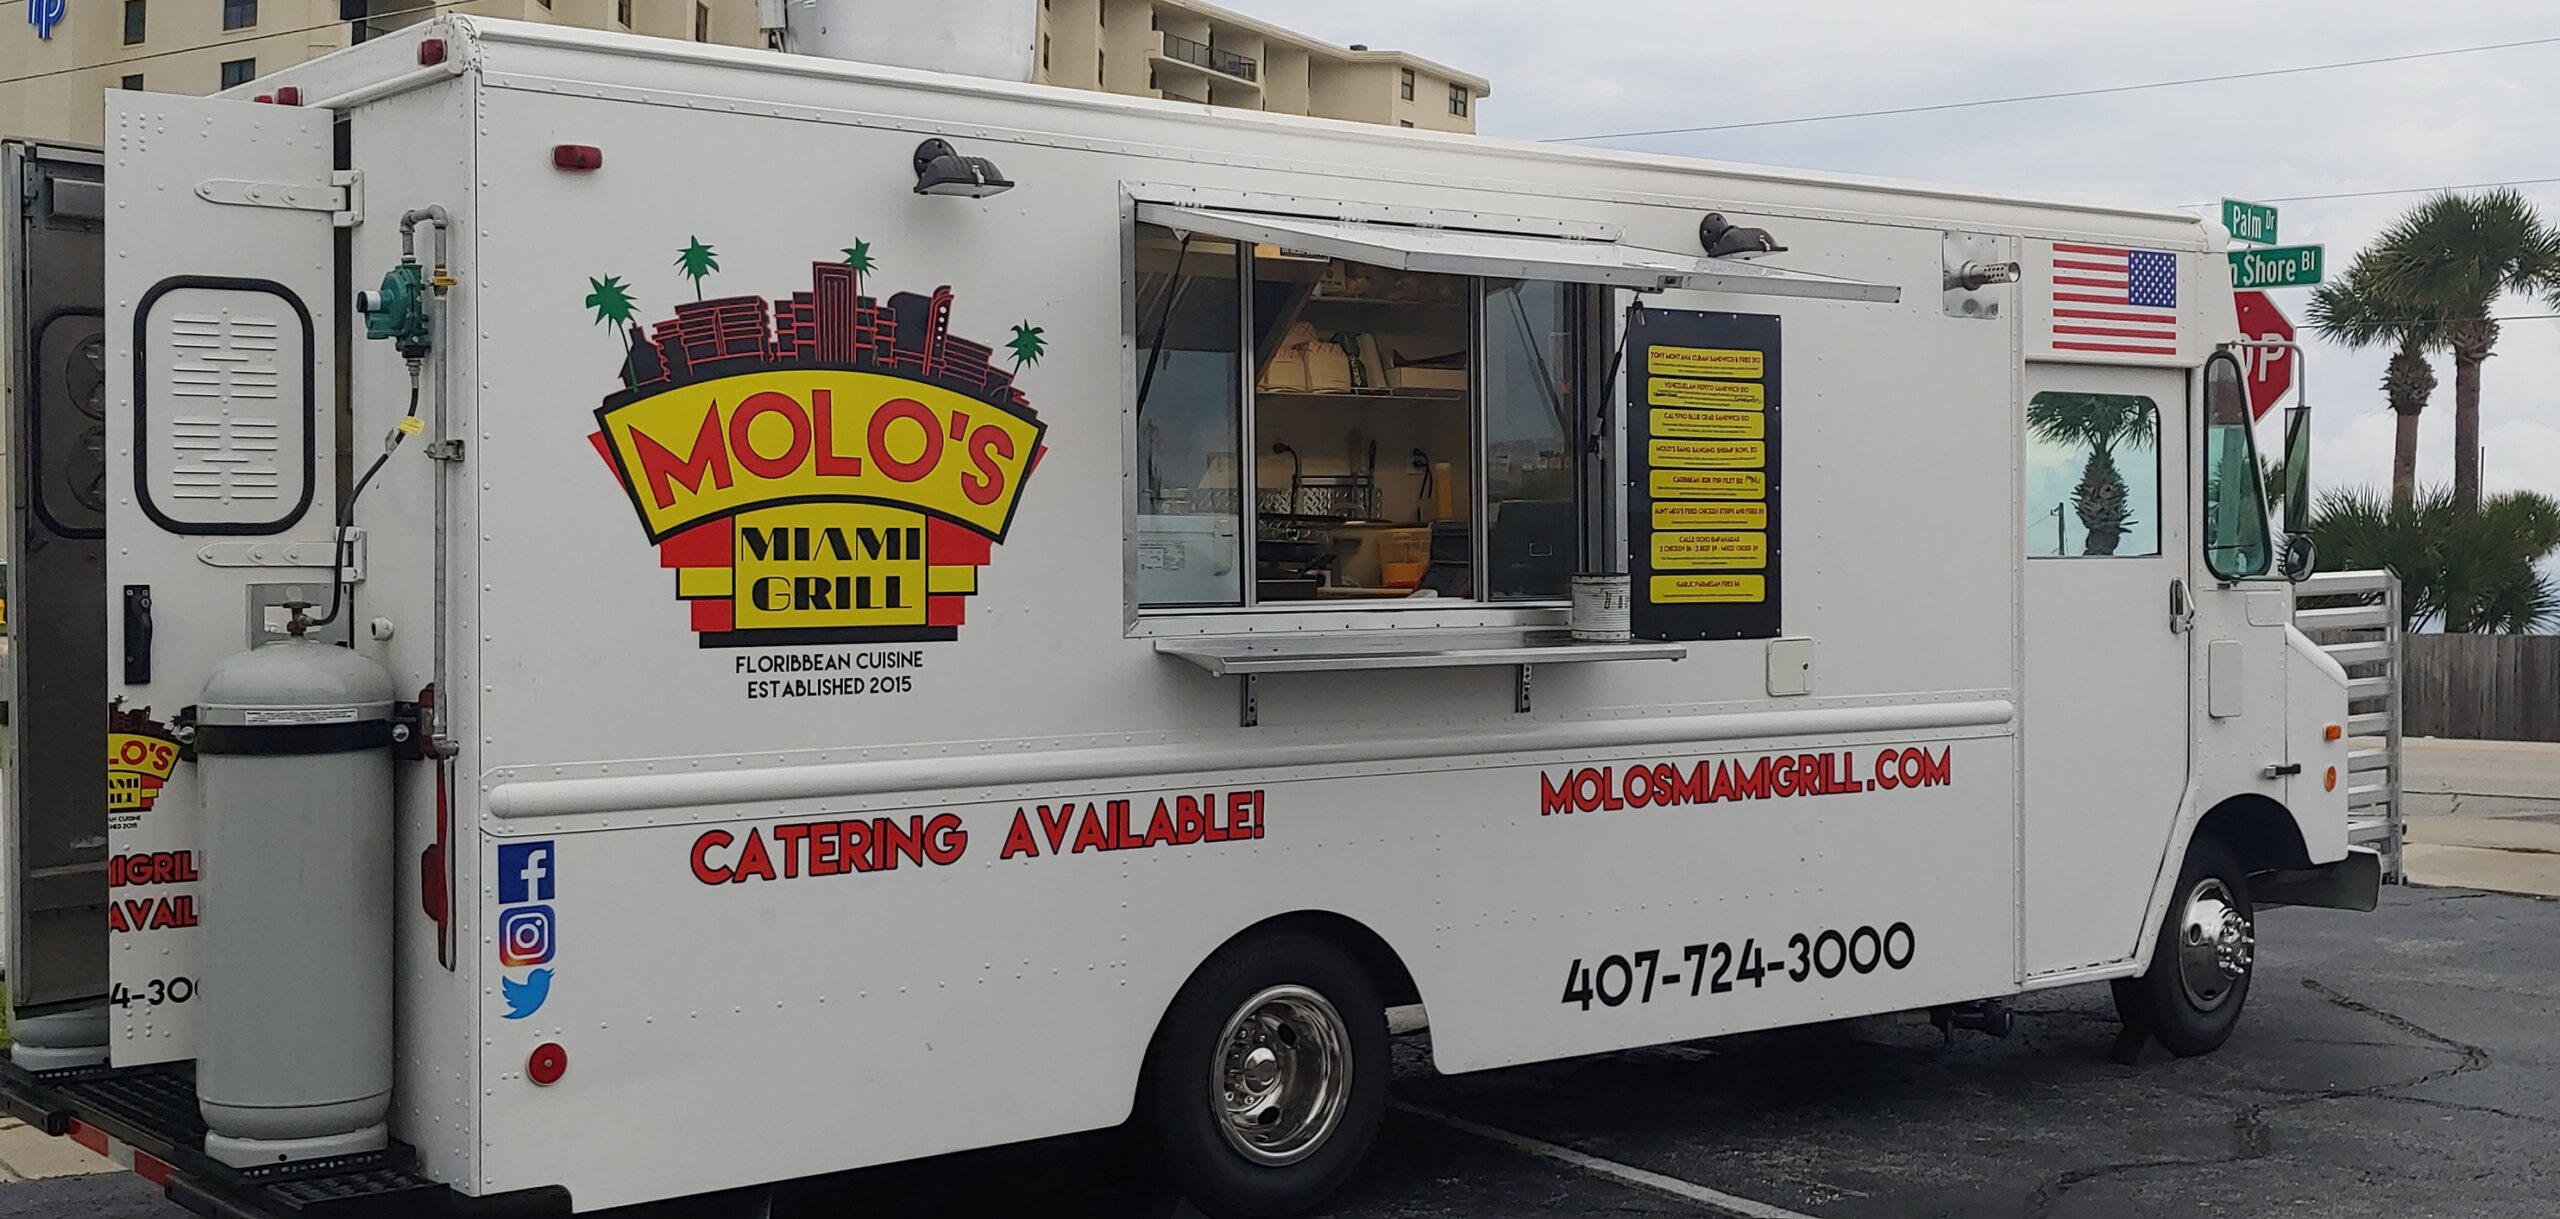 Molo' Miami Grill food truck